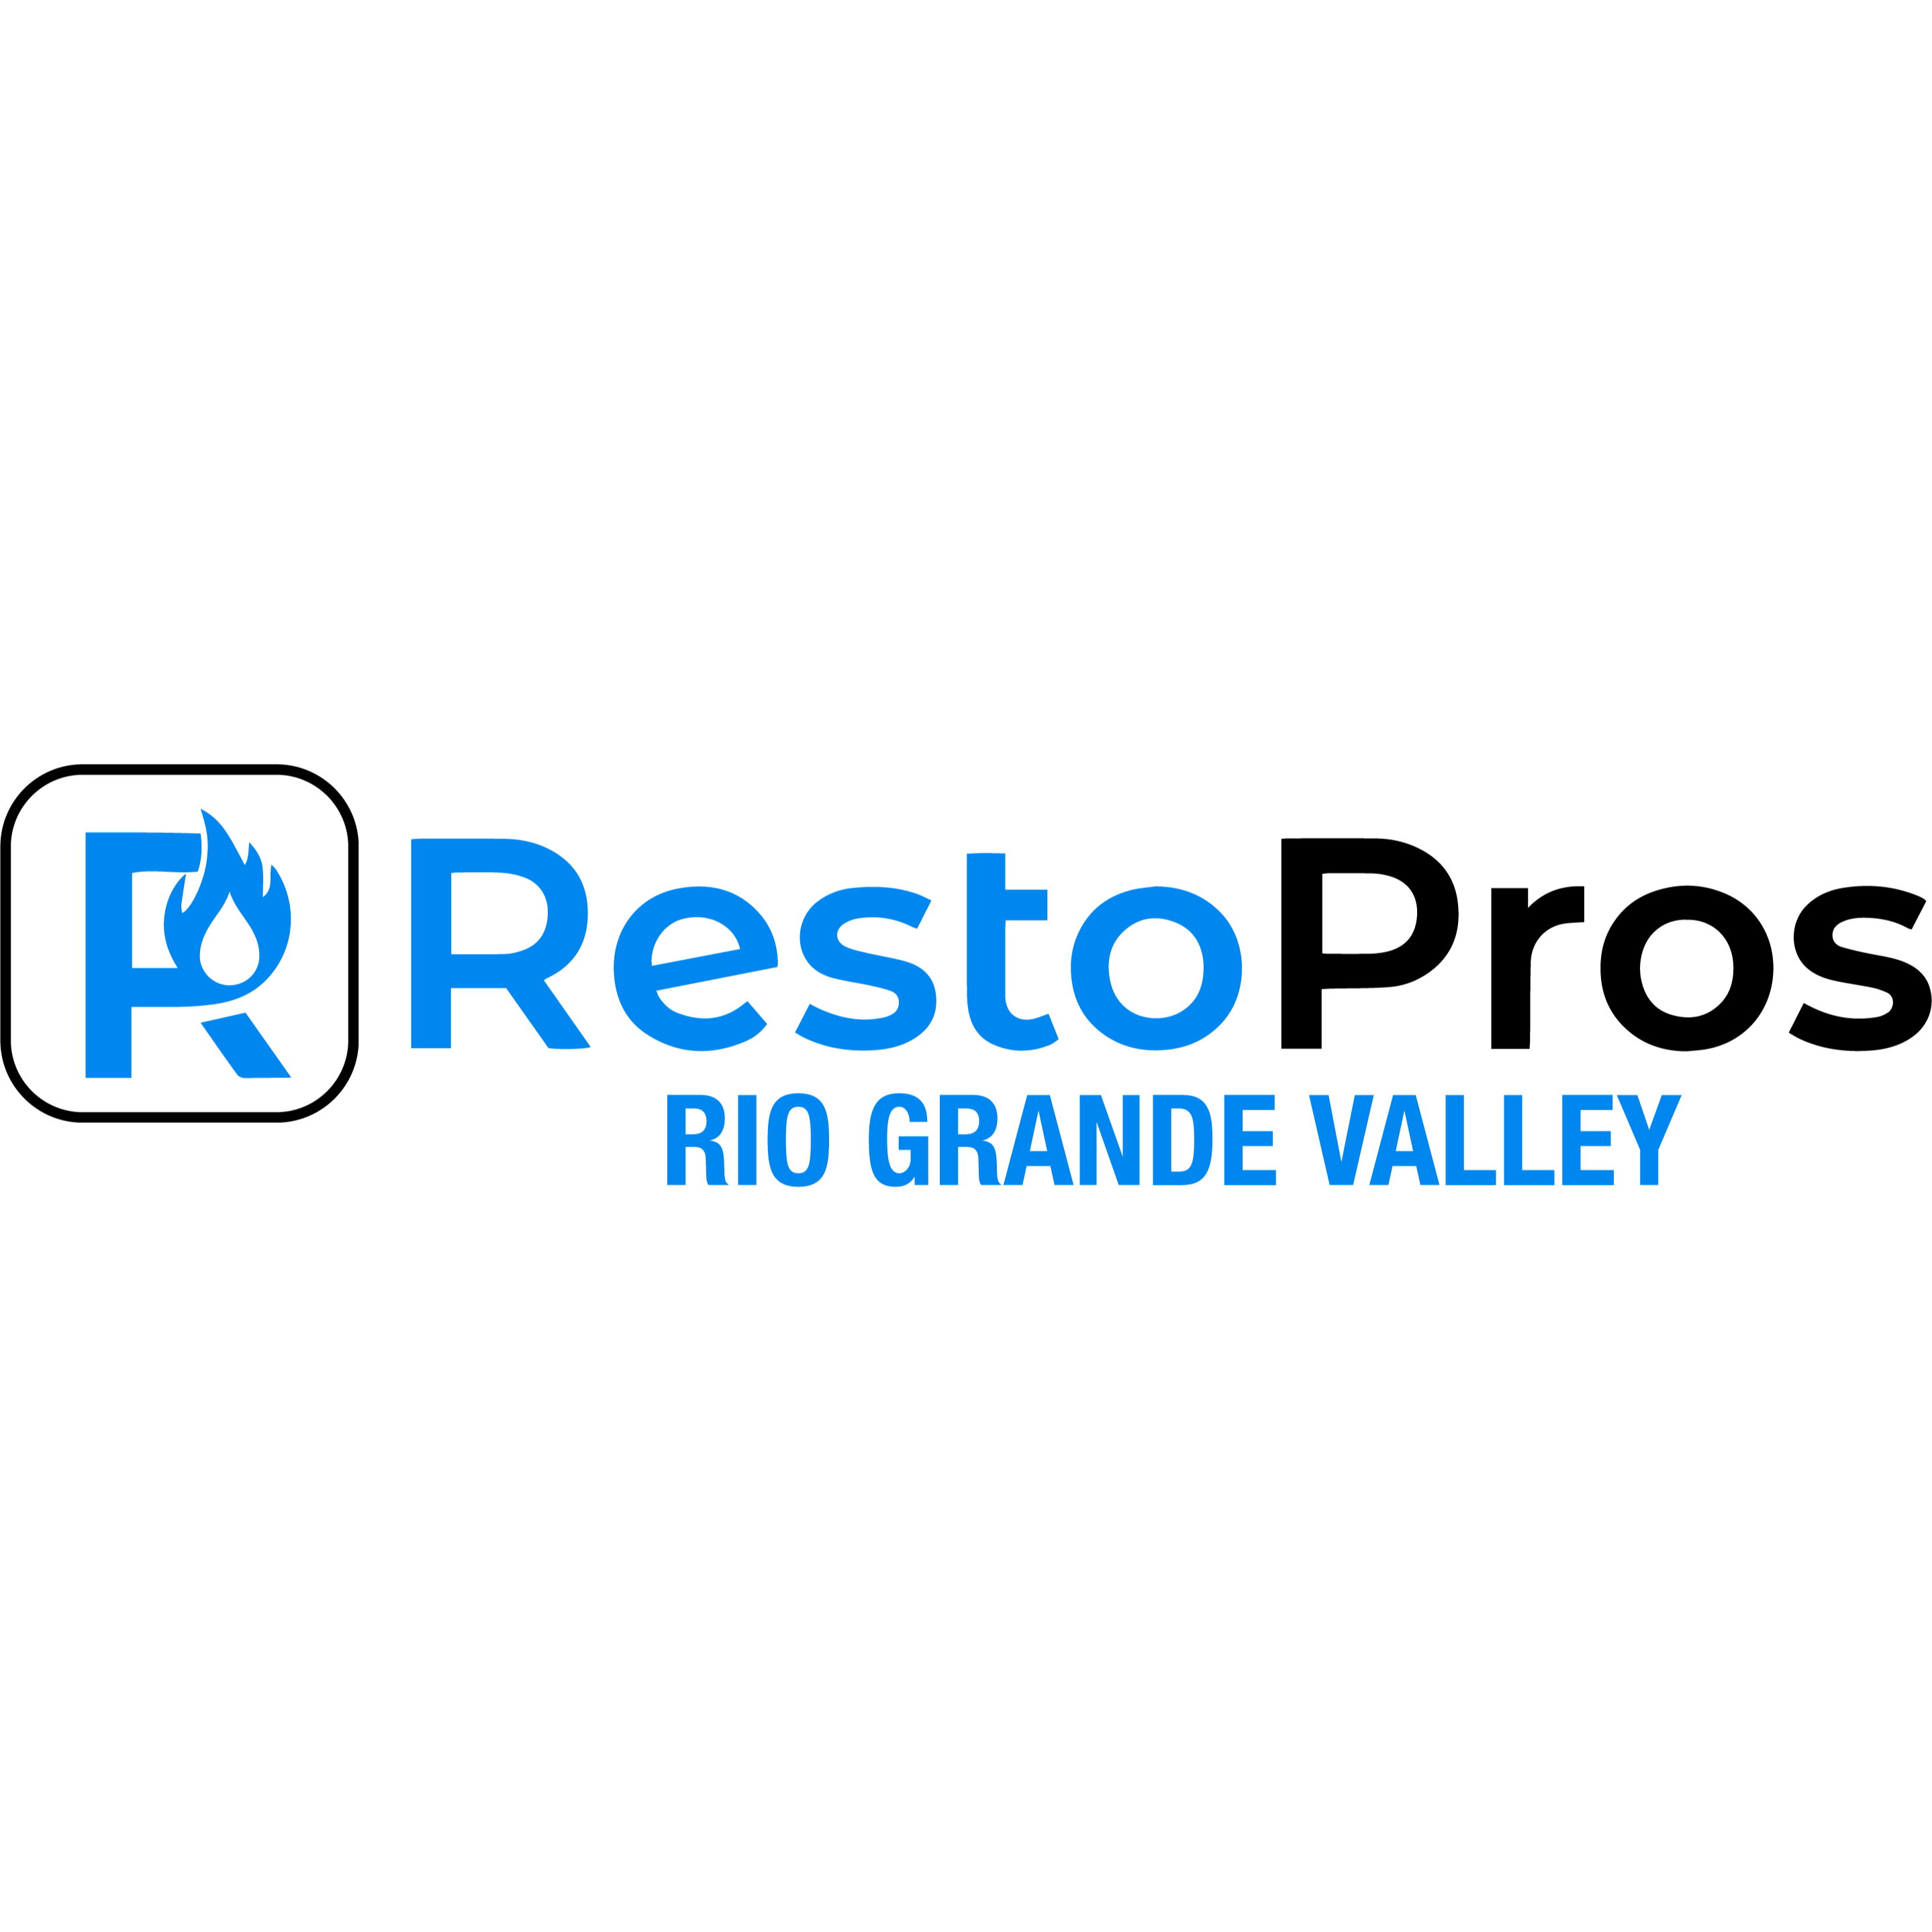 RestoPros of Rio Grande Valley